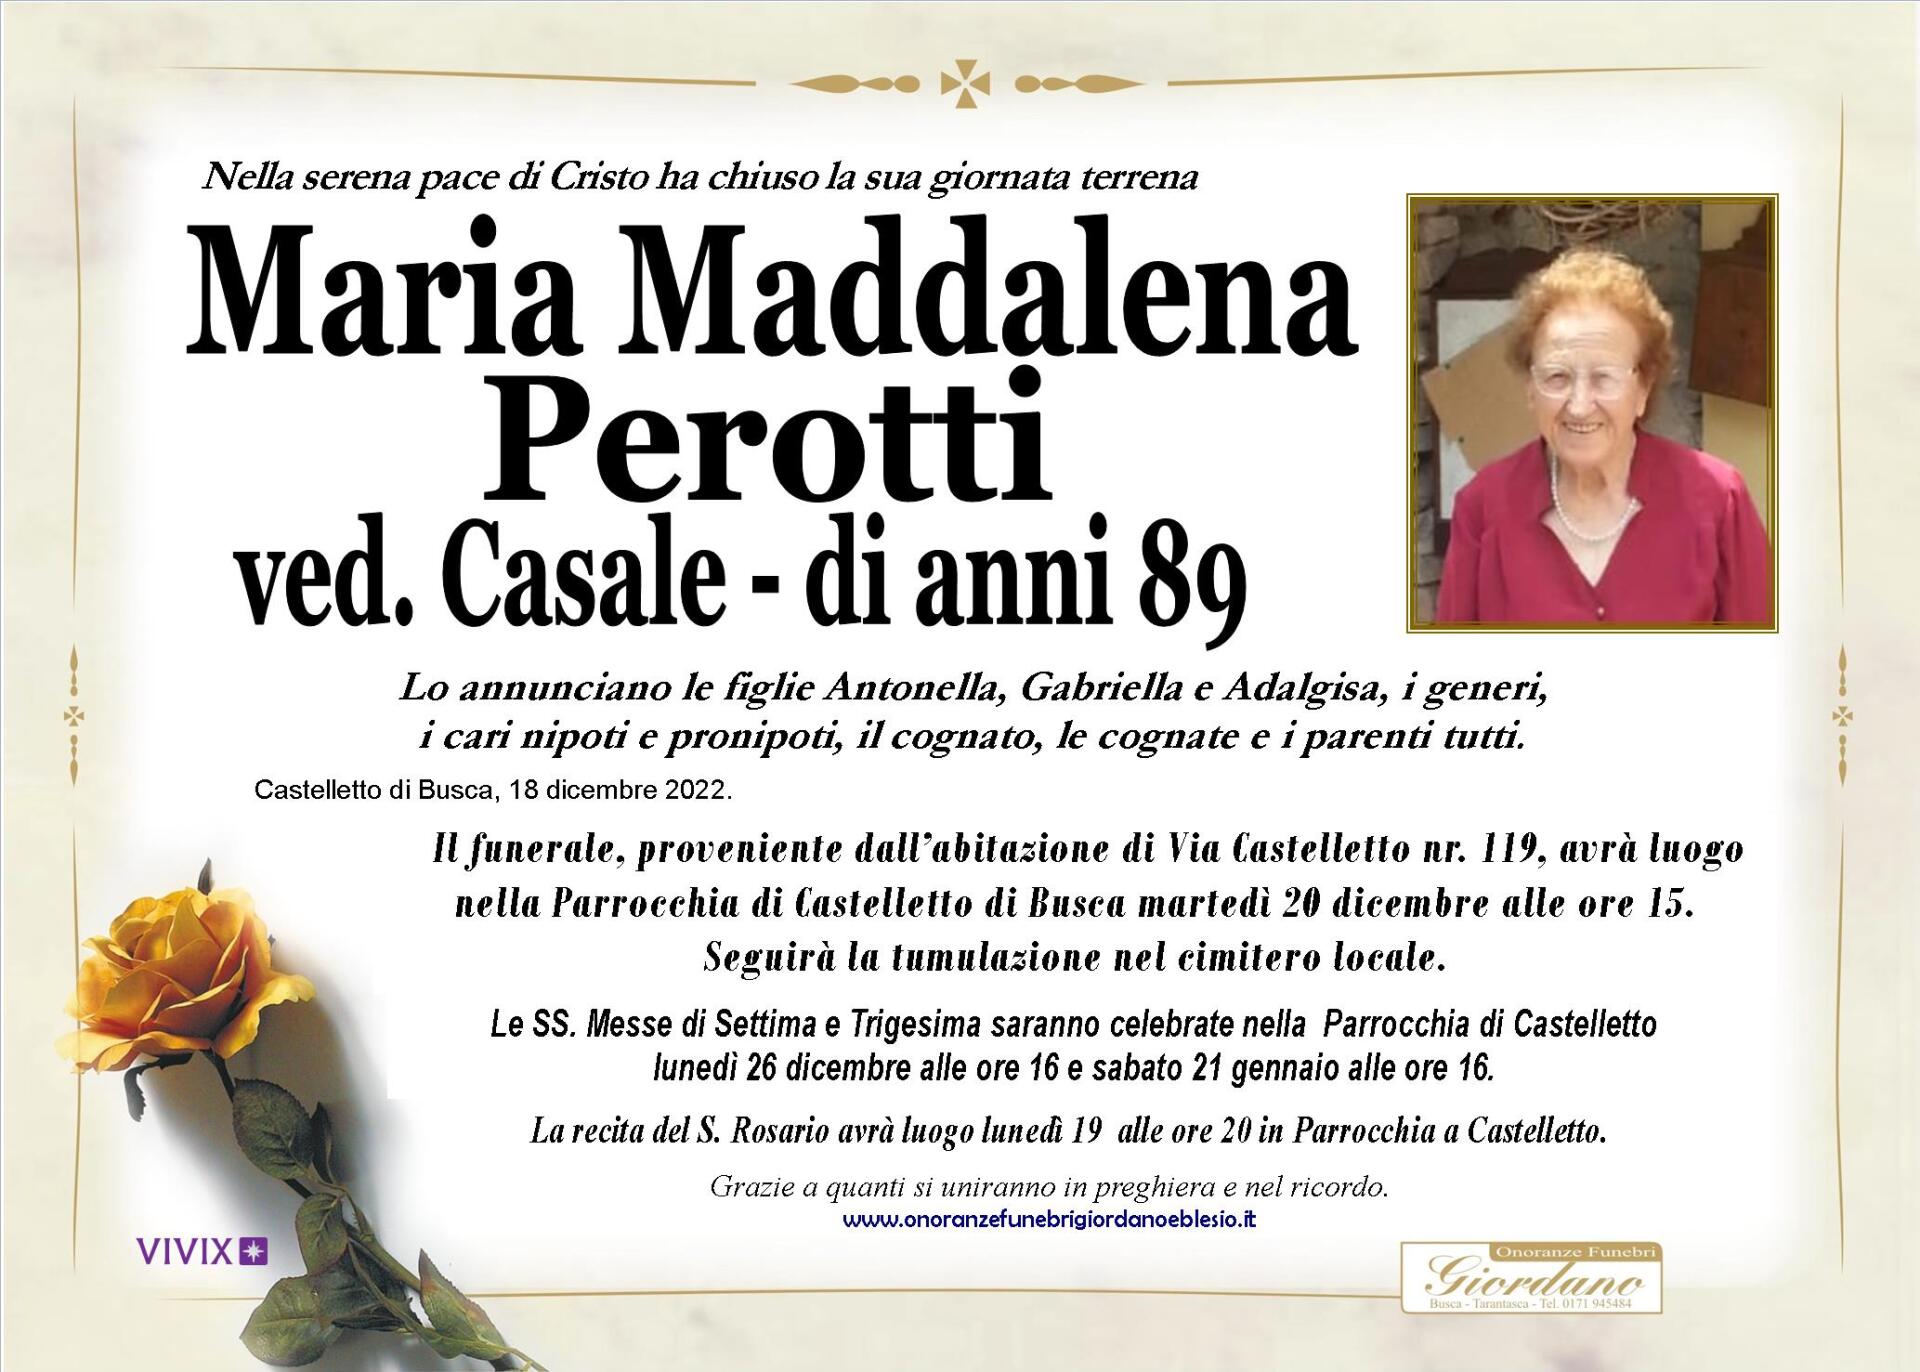 necrologio PEROTTI Maria Maddalena ved. Casale